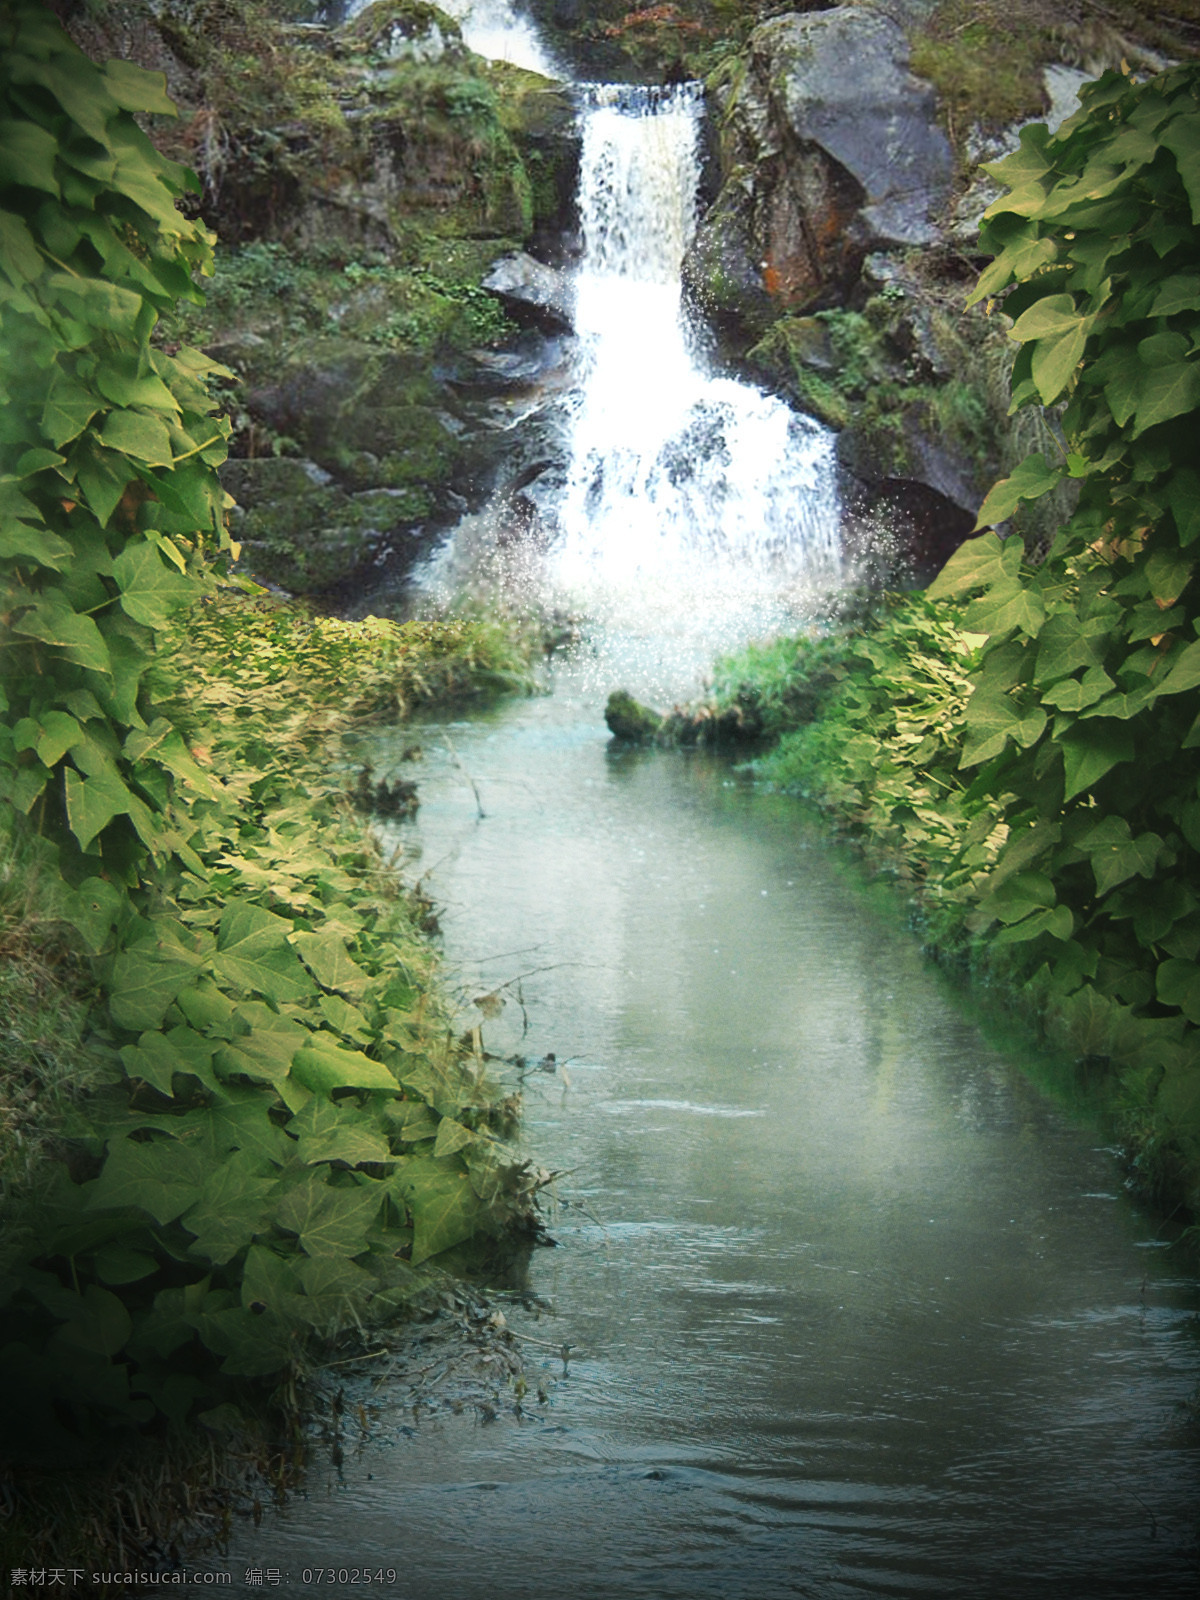 自然风光 摄影图片 小溪 河流 瀑布 石头 树叶 植物 景观 景区 休闲旅游 山水风景 风景图片